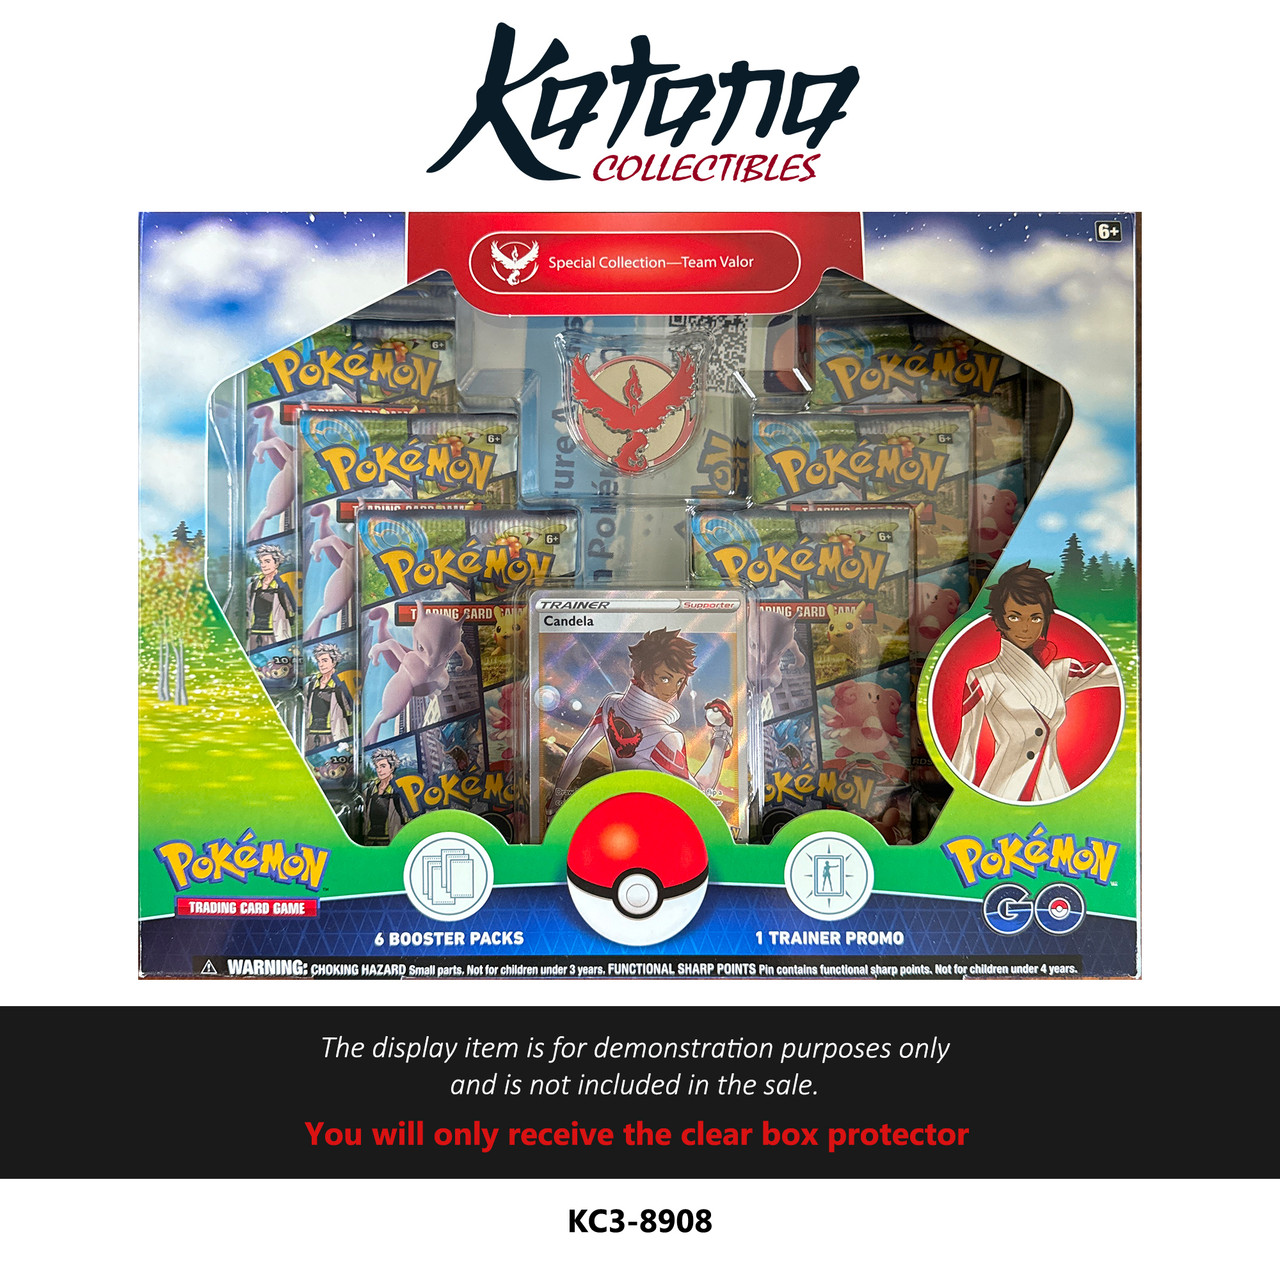 Katana Collectibles Protector For Pokemon Go Special Collection